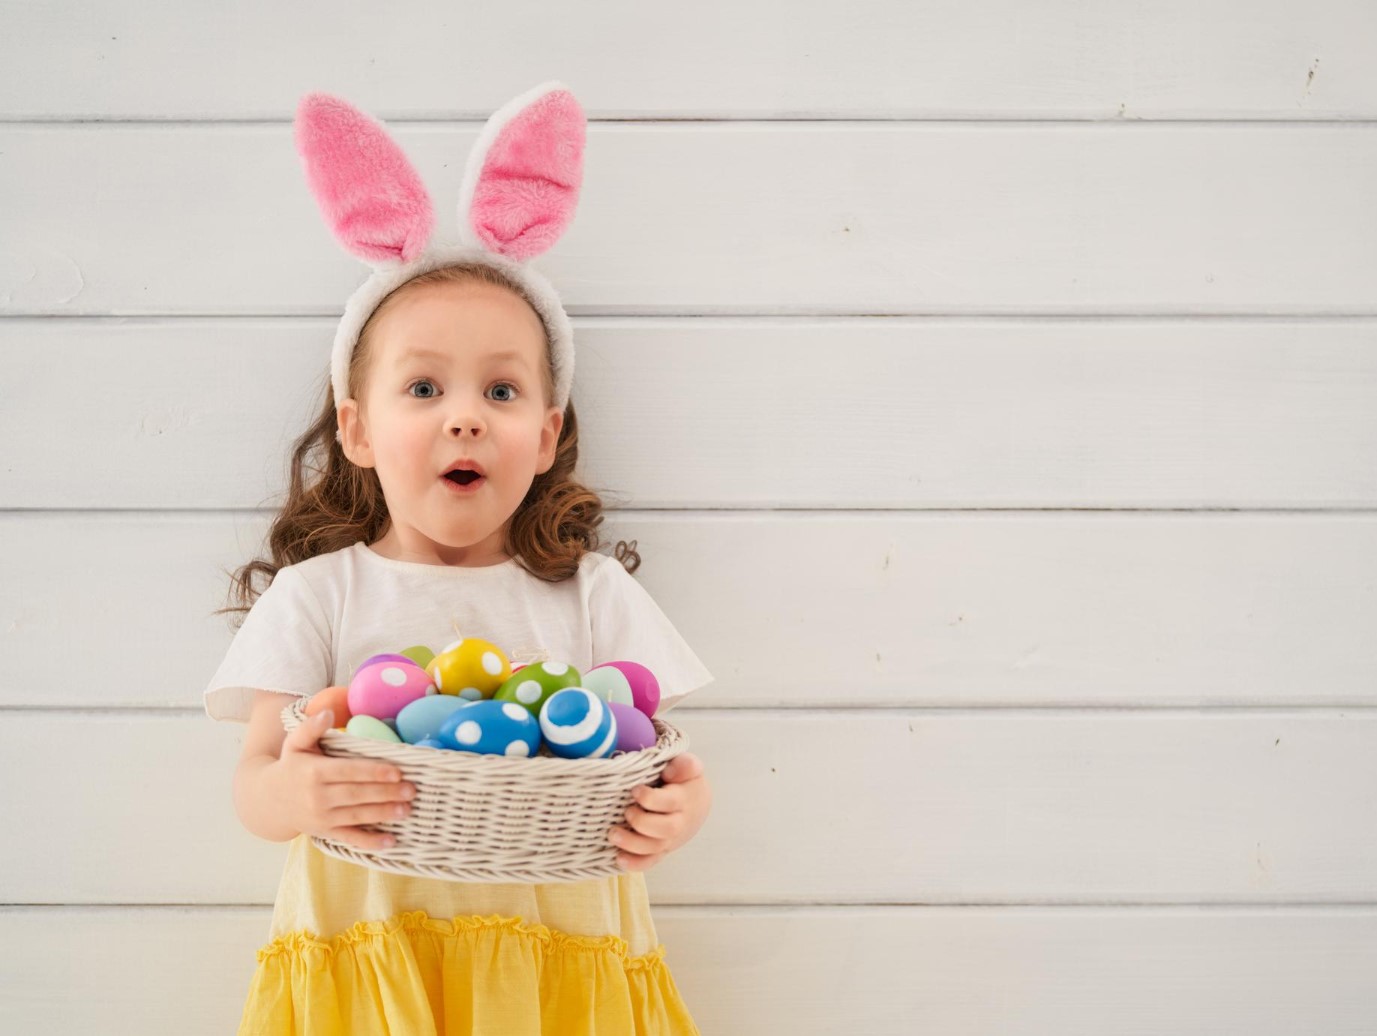 Tündéri versek húsvétra lányoknak - így köszönhetik meg a locsolást egy kis verssel, mondókával